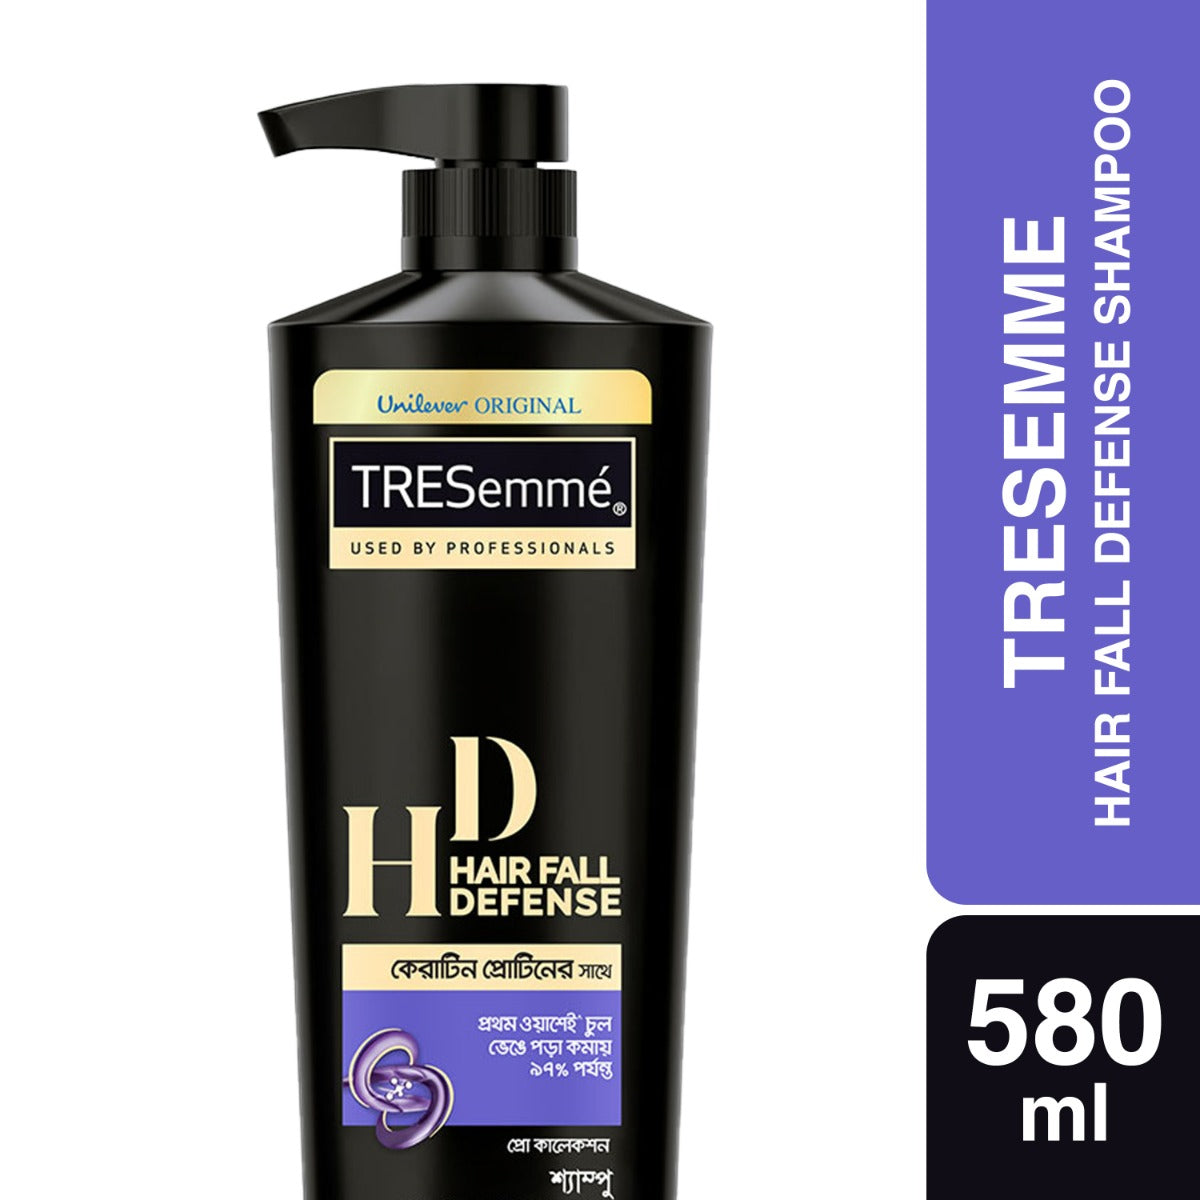 Tresemme Shampoo Hair Fall Defense (580ml)